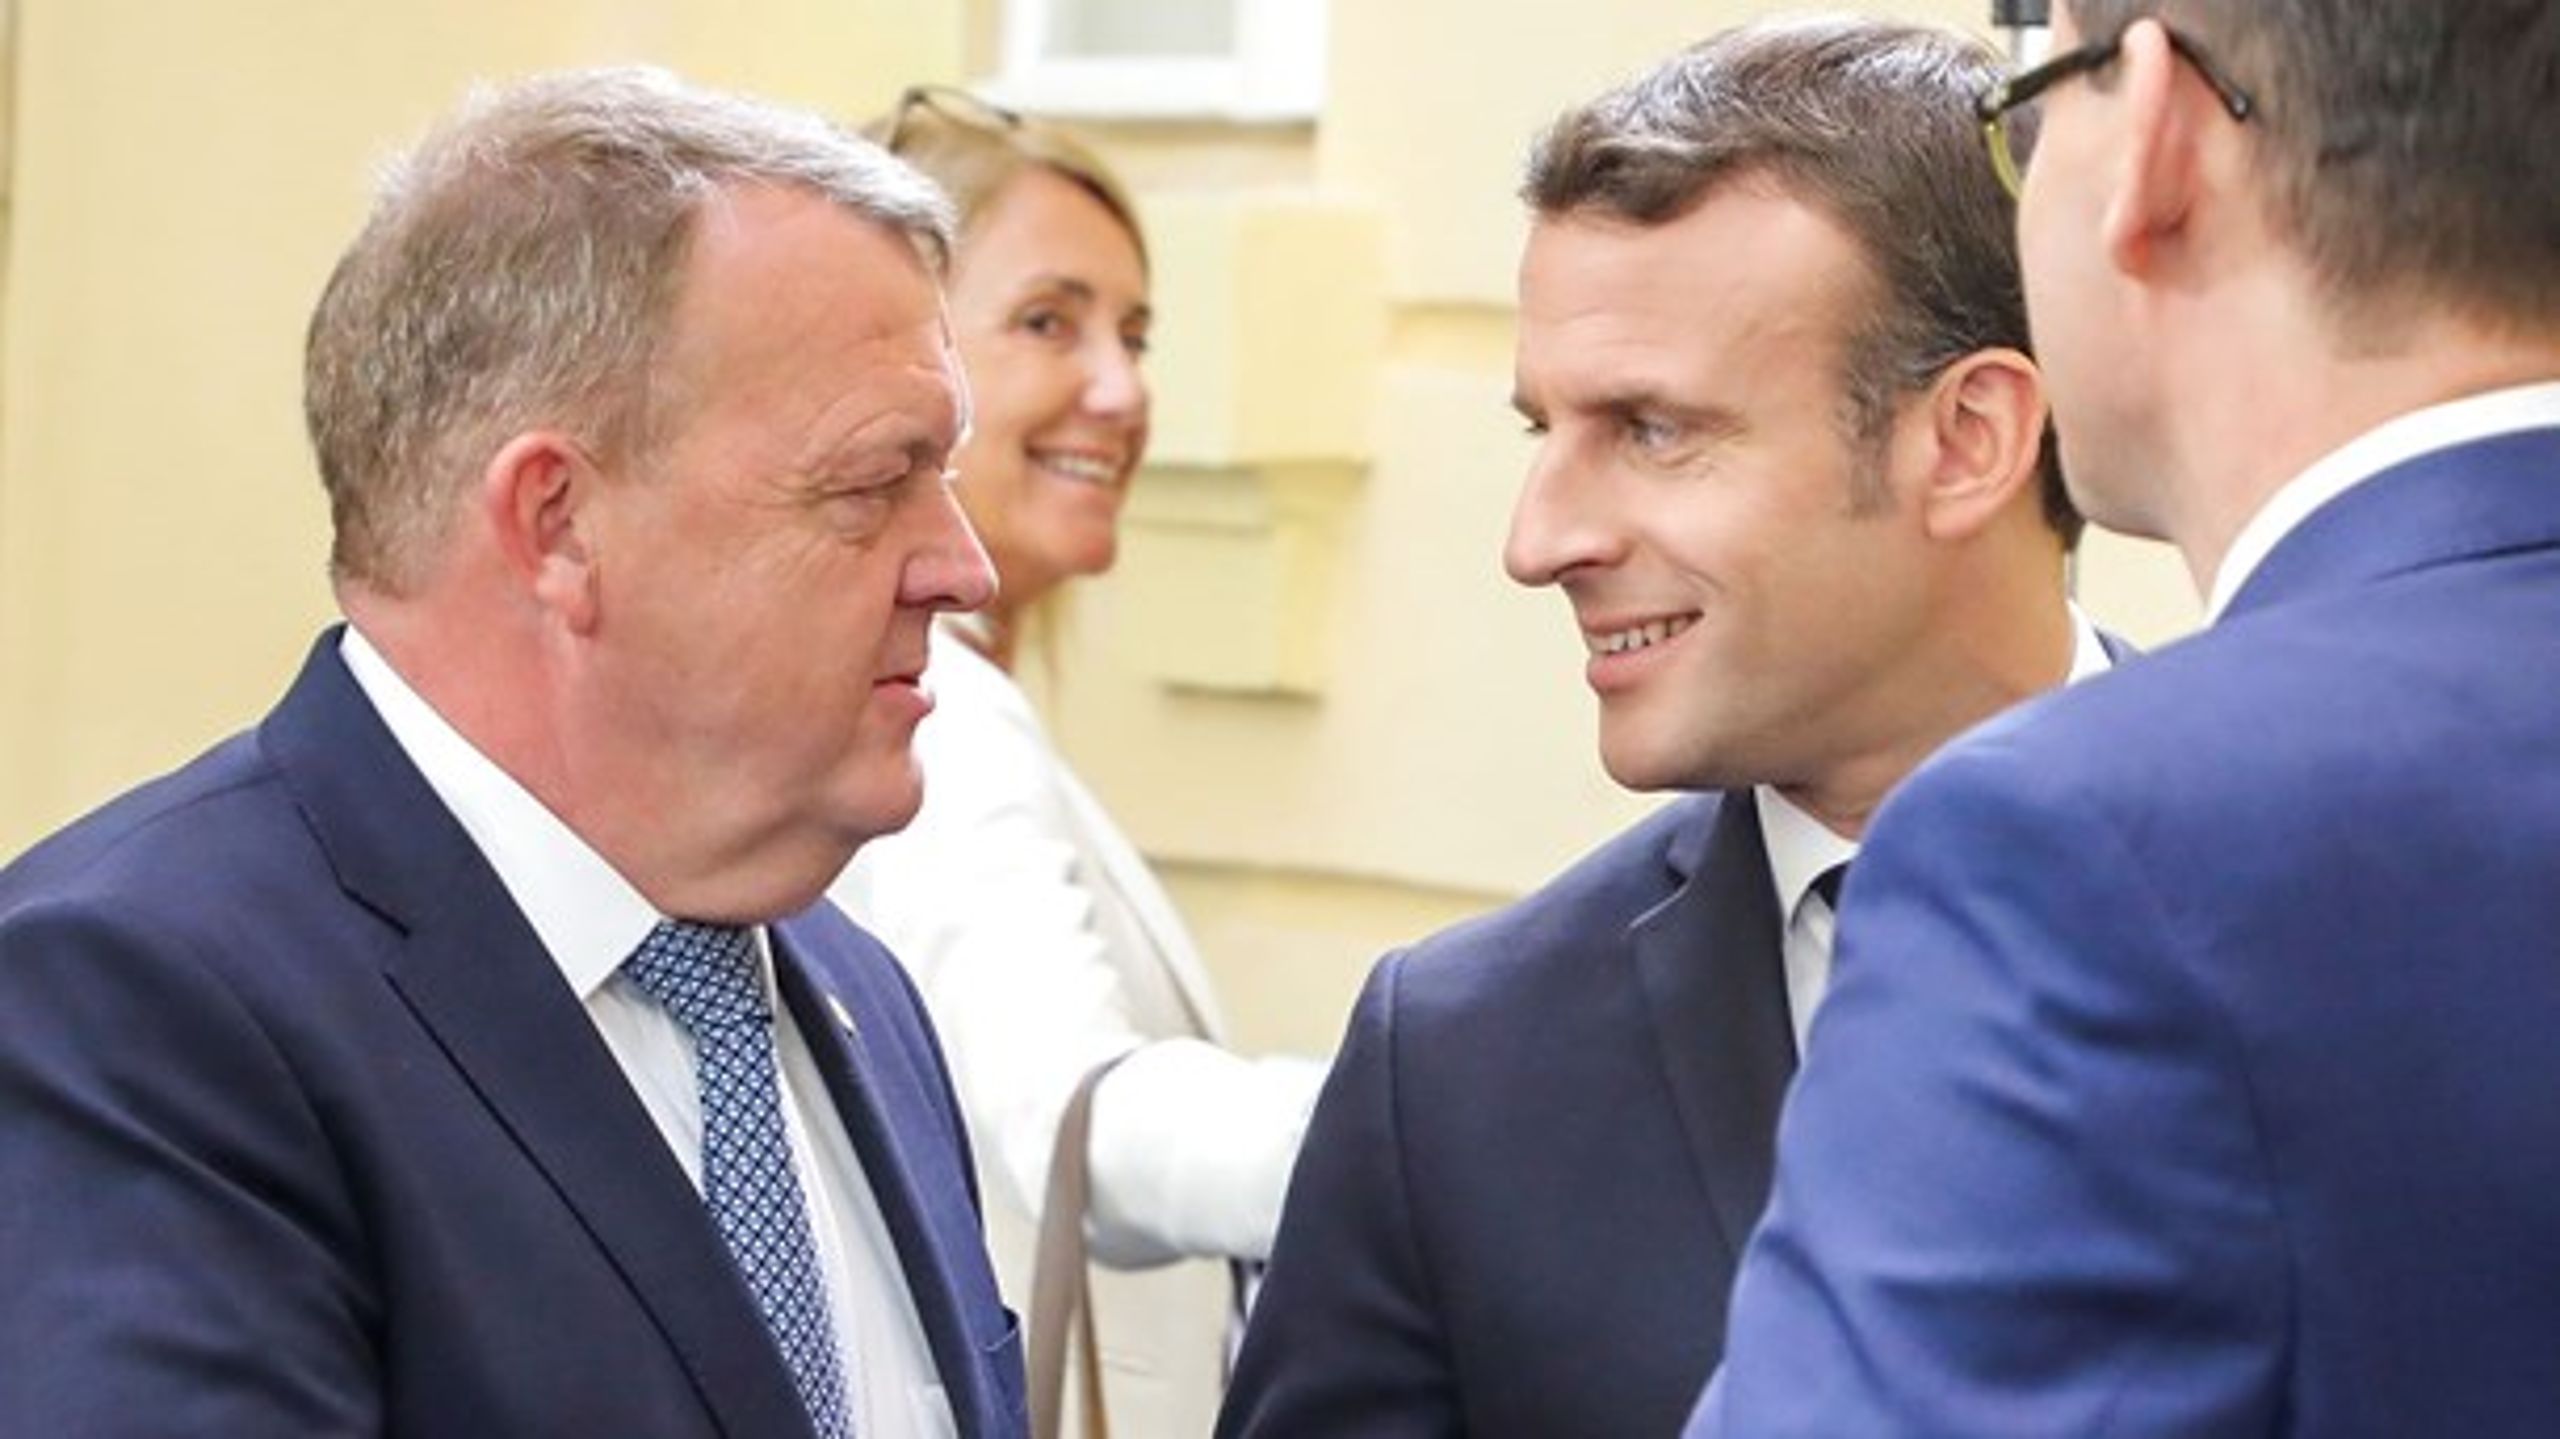 Der er mange ting, statsminister Lars Løkke Rasmussen (t.v.) ikke er enig med den franske præsident, Emmanuel Macron (t.h.), om. Men ingen af dem kan lide den såkaldte spitzenkandidatproces til udvælgelse af den næste EU-kommissionsformand.